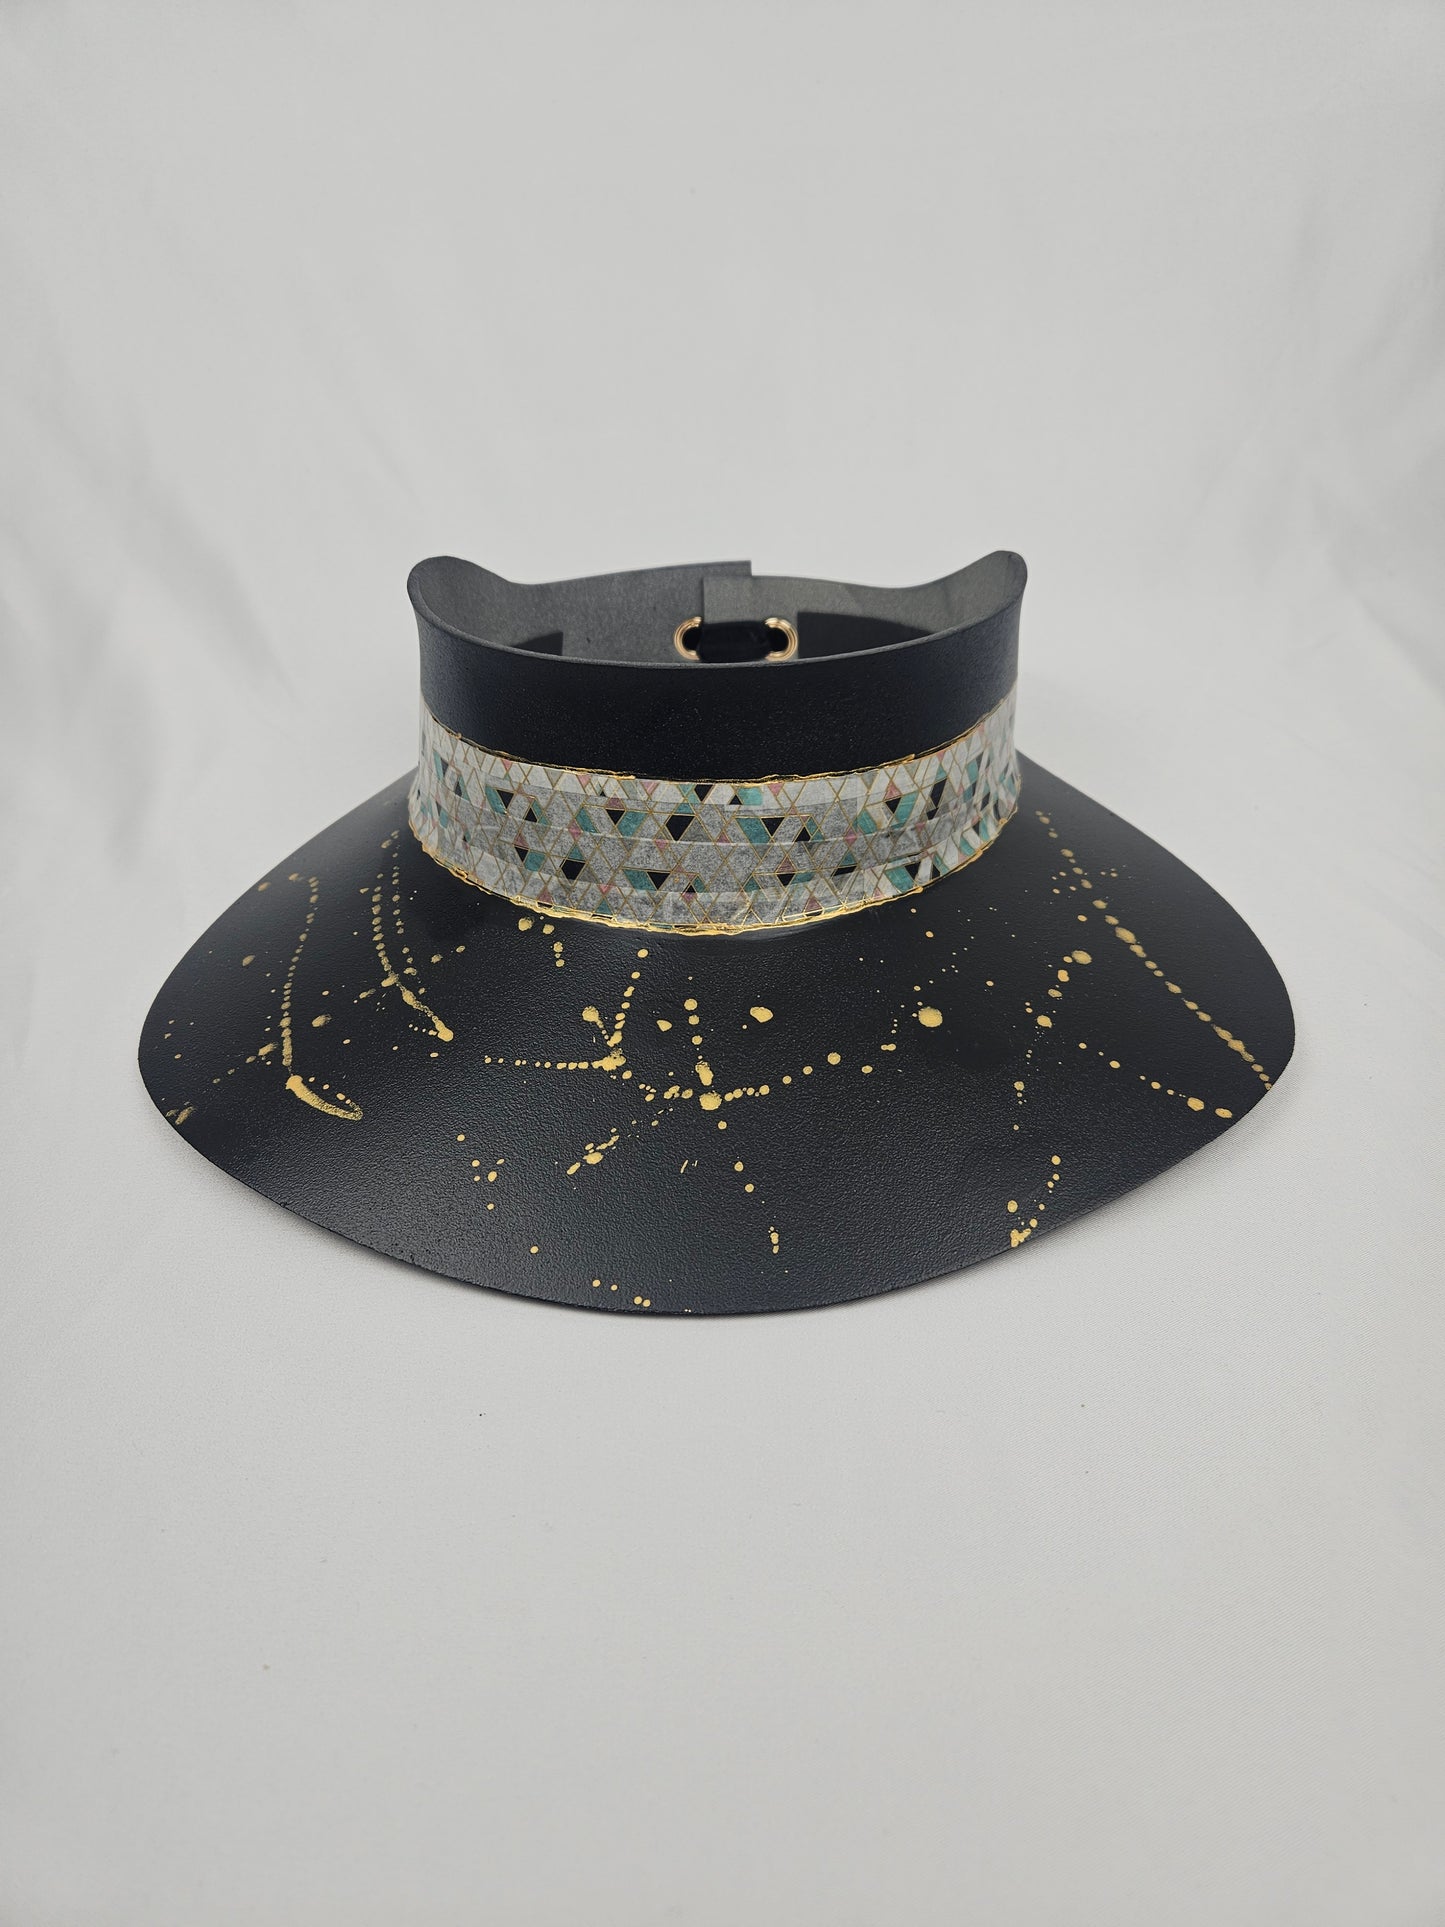 Tall Timeless Black Audrey Foam Sun Visor Hat with Elegant Geometric Band and Golden Paint Splatter: 1950s, Walks, Brunch, Tea, Golf, Wedding, Church, No Headache, Easter, Pool